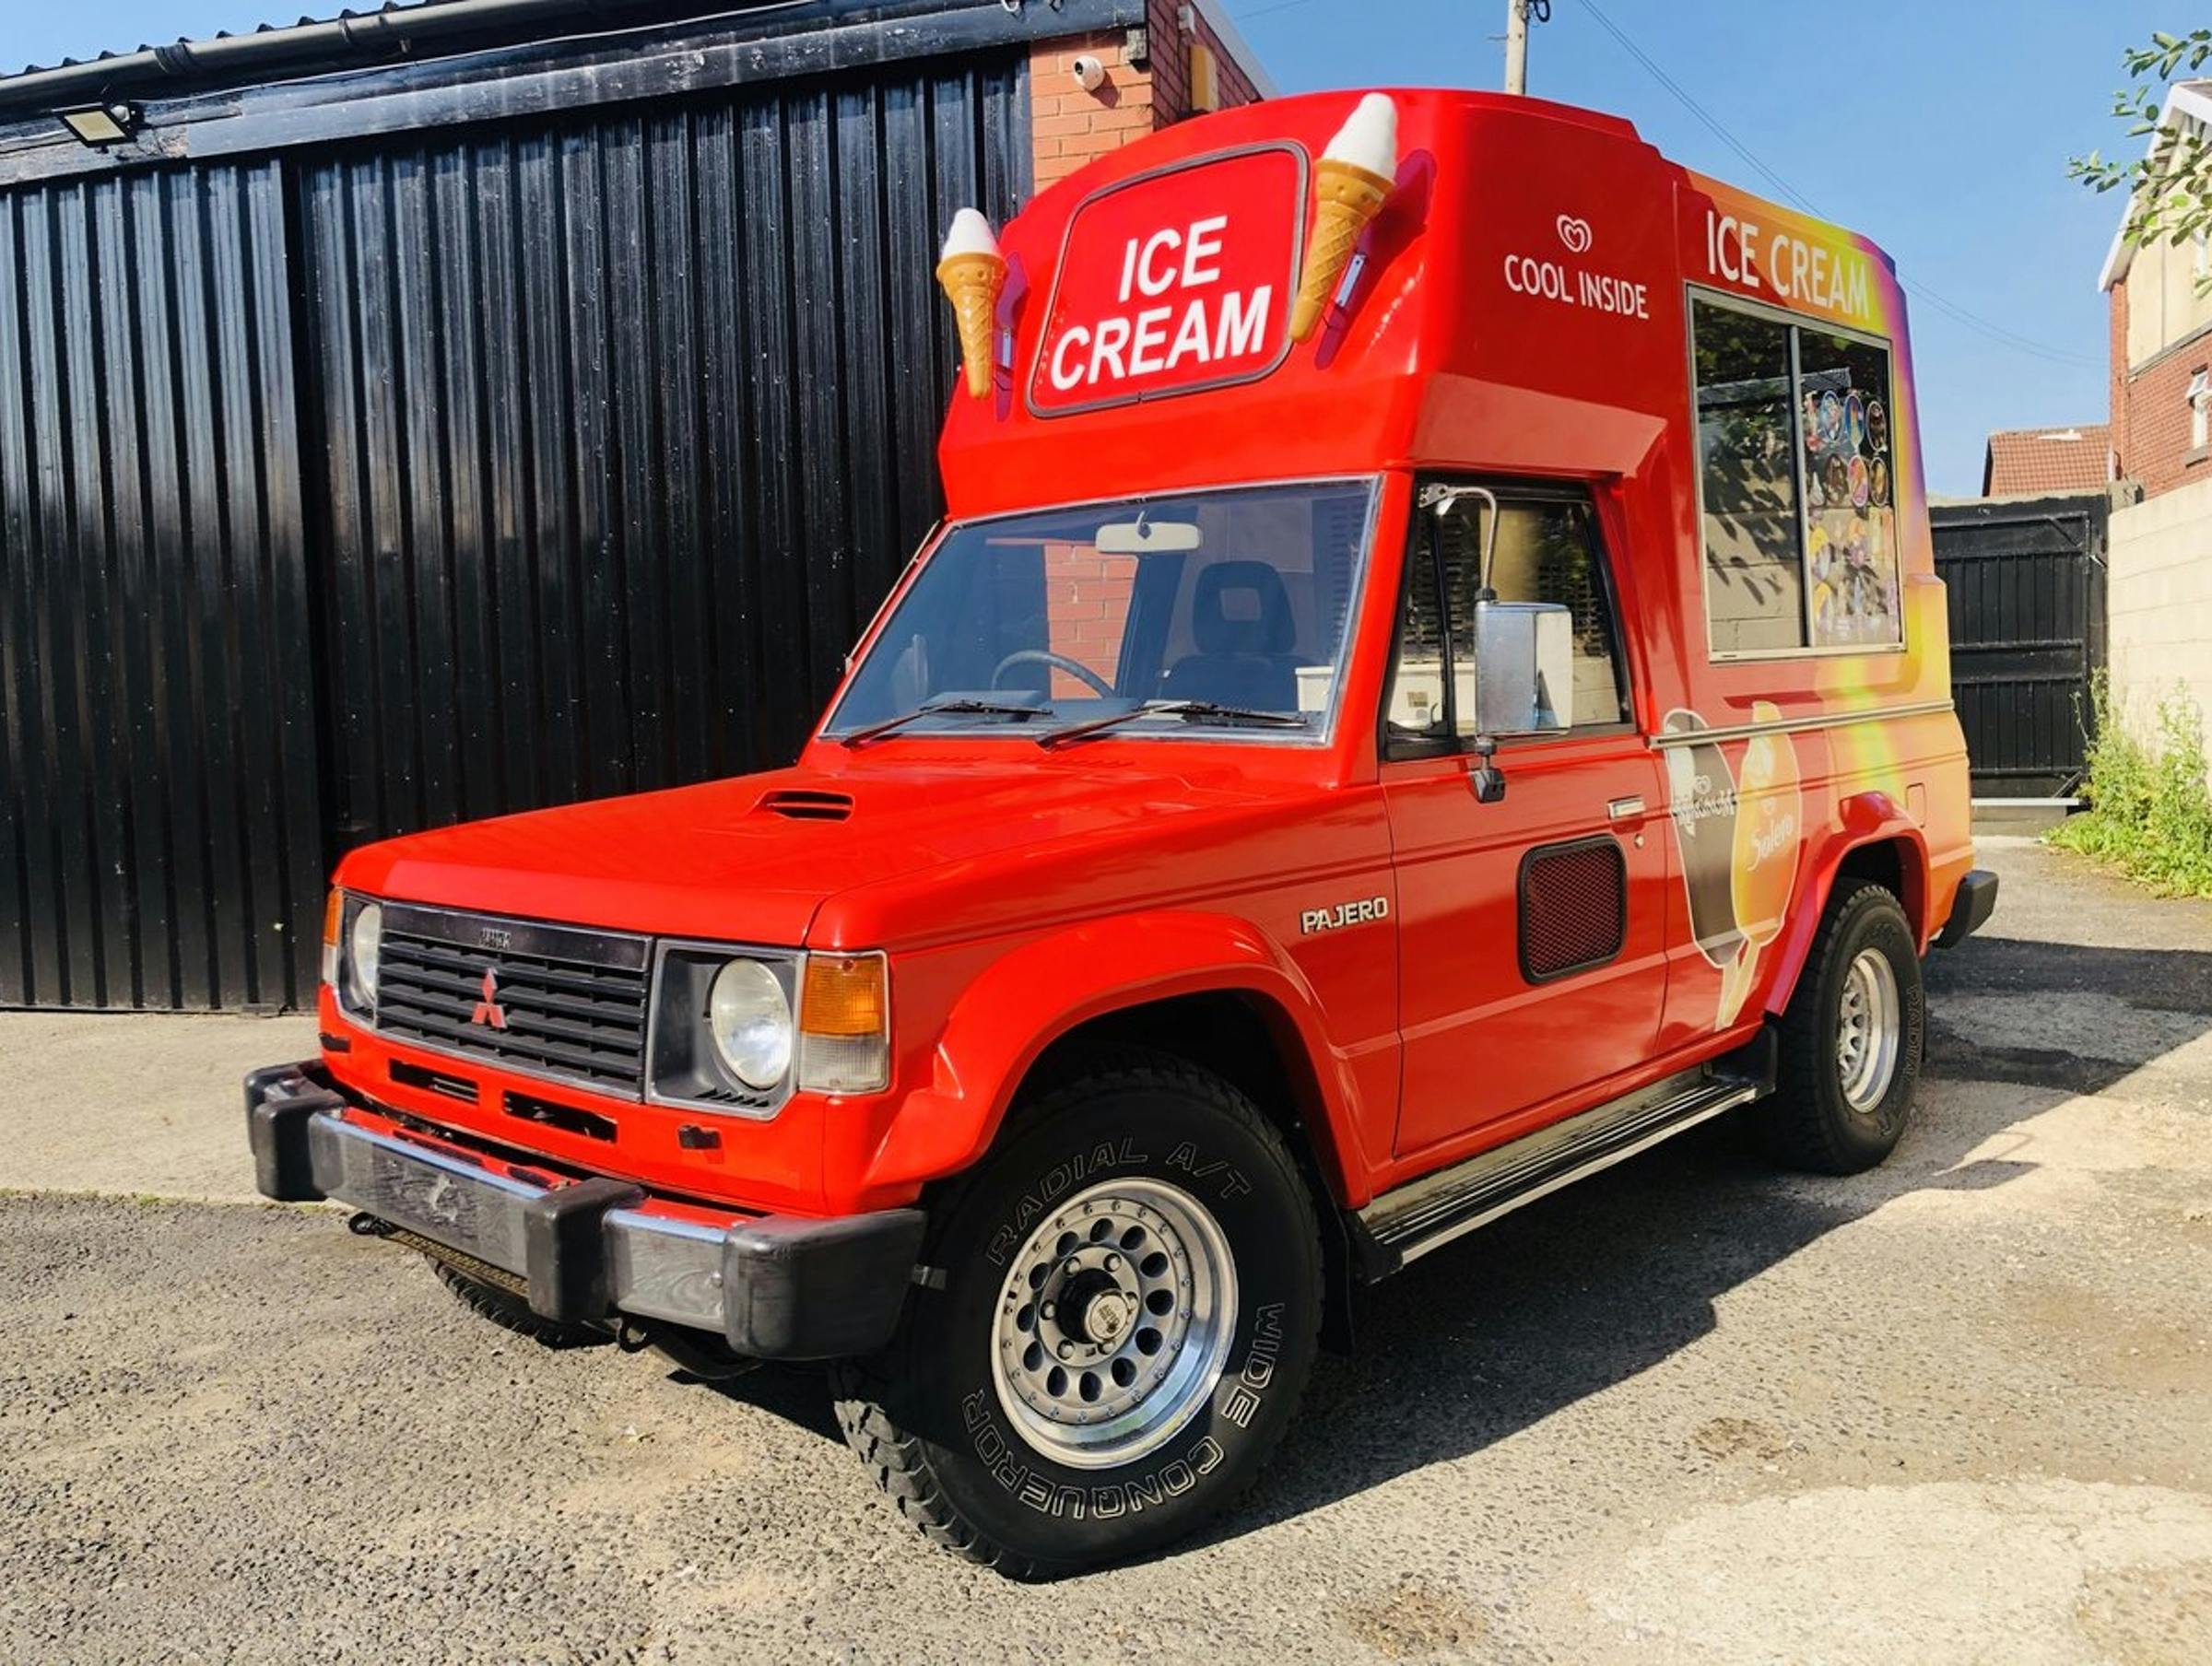 Mitsubishi Pajero ice cream van front thee-quarter